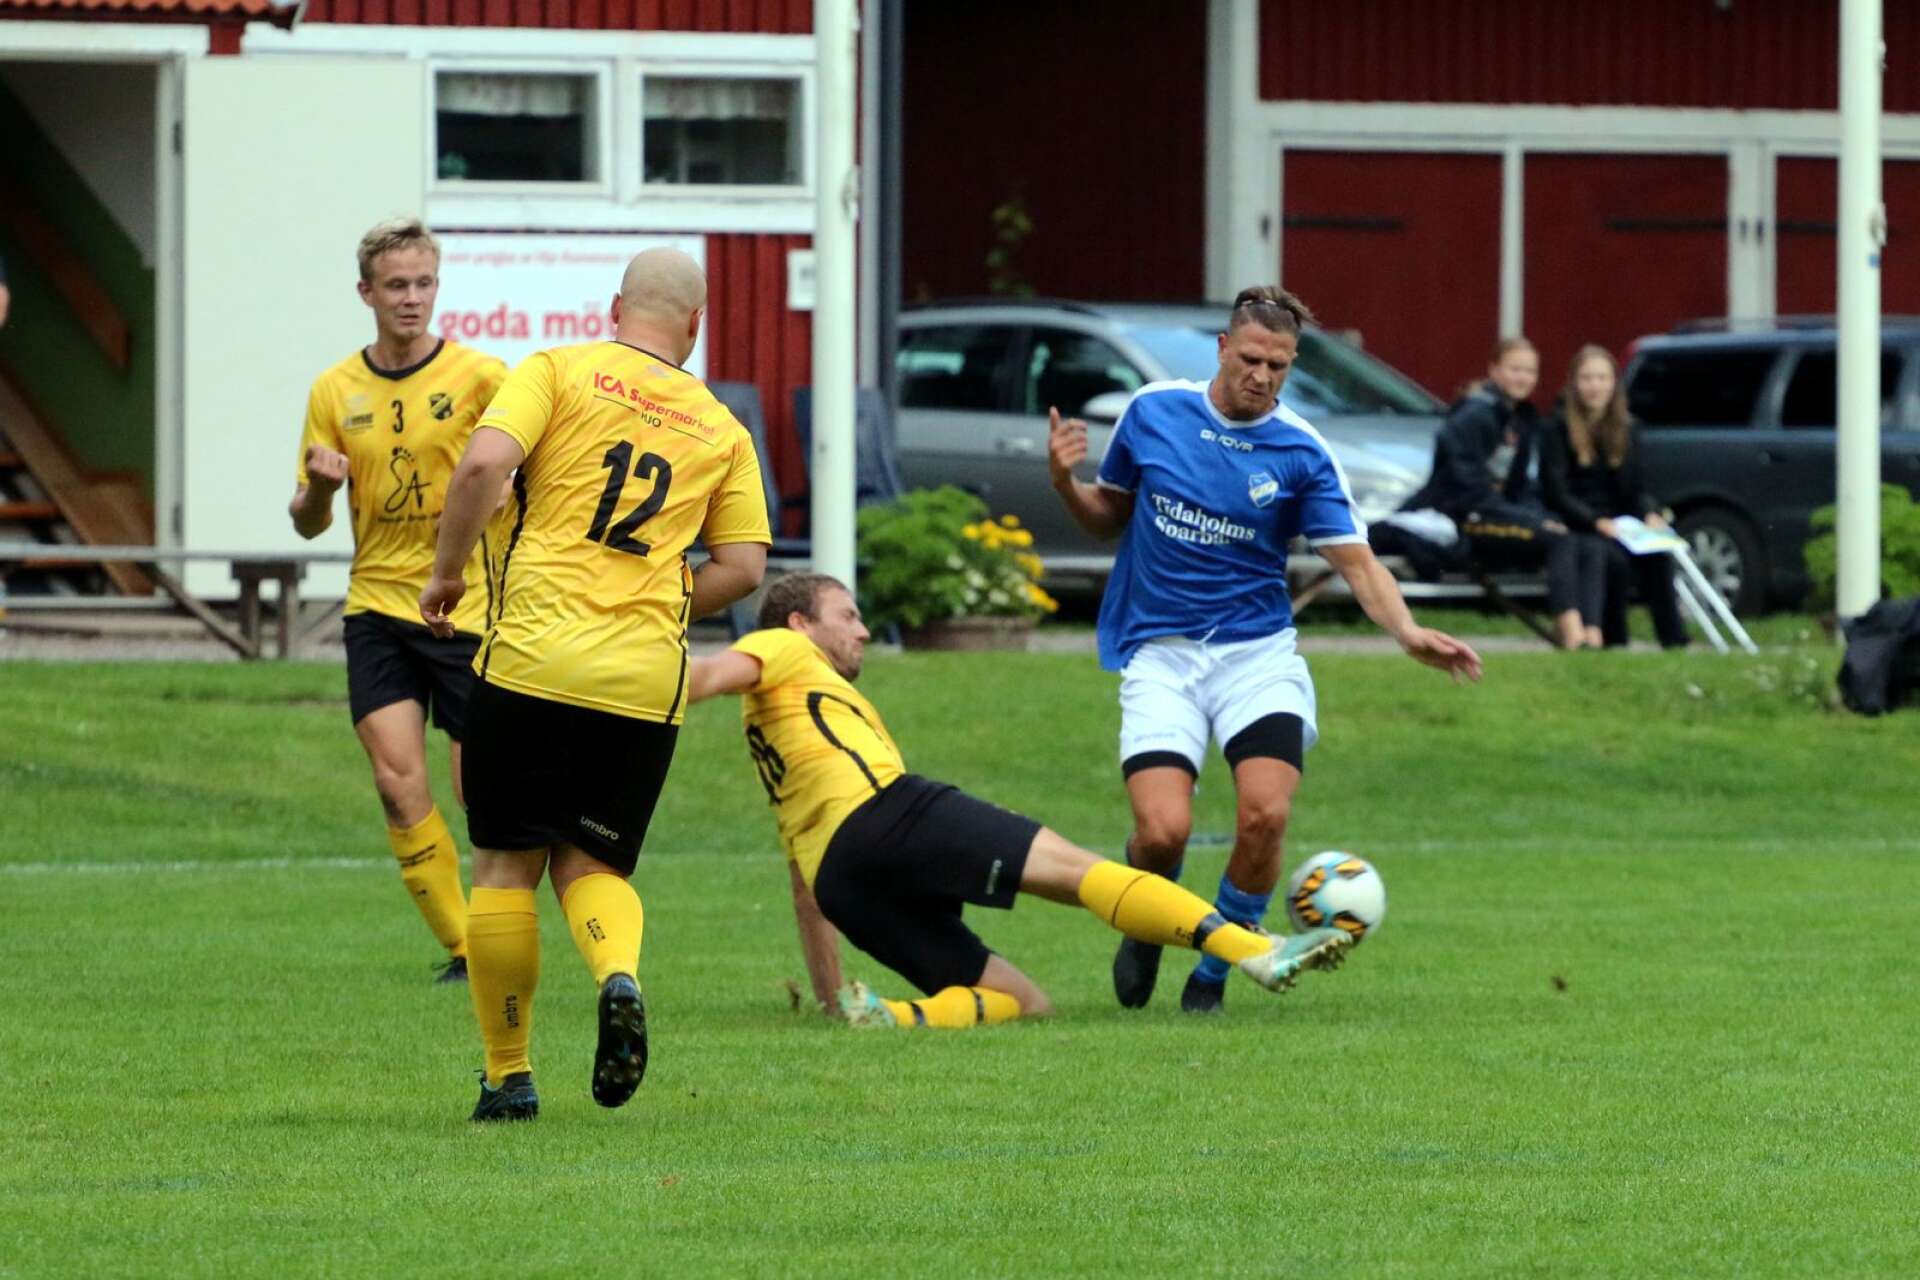 Norra Fågelås startar hösten med FC Skövde på Landbyvallen. BILD: ARKIV